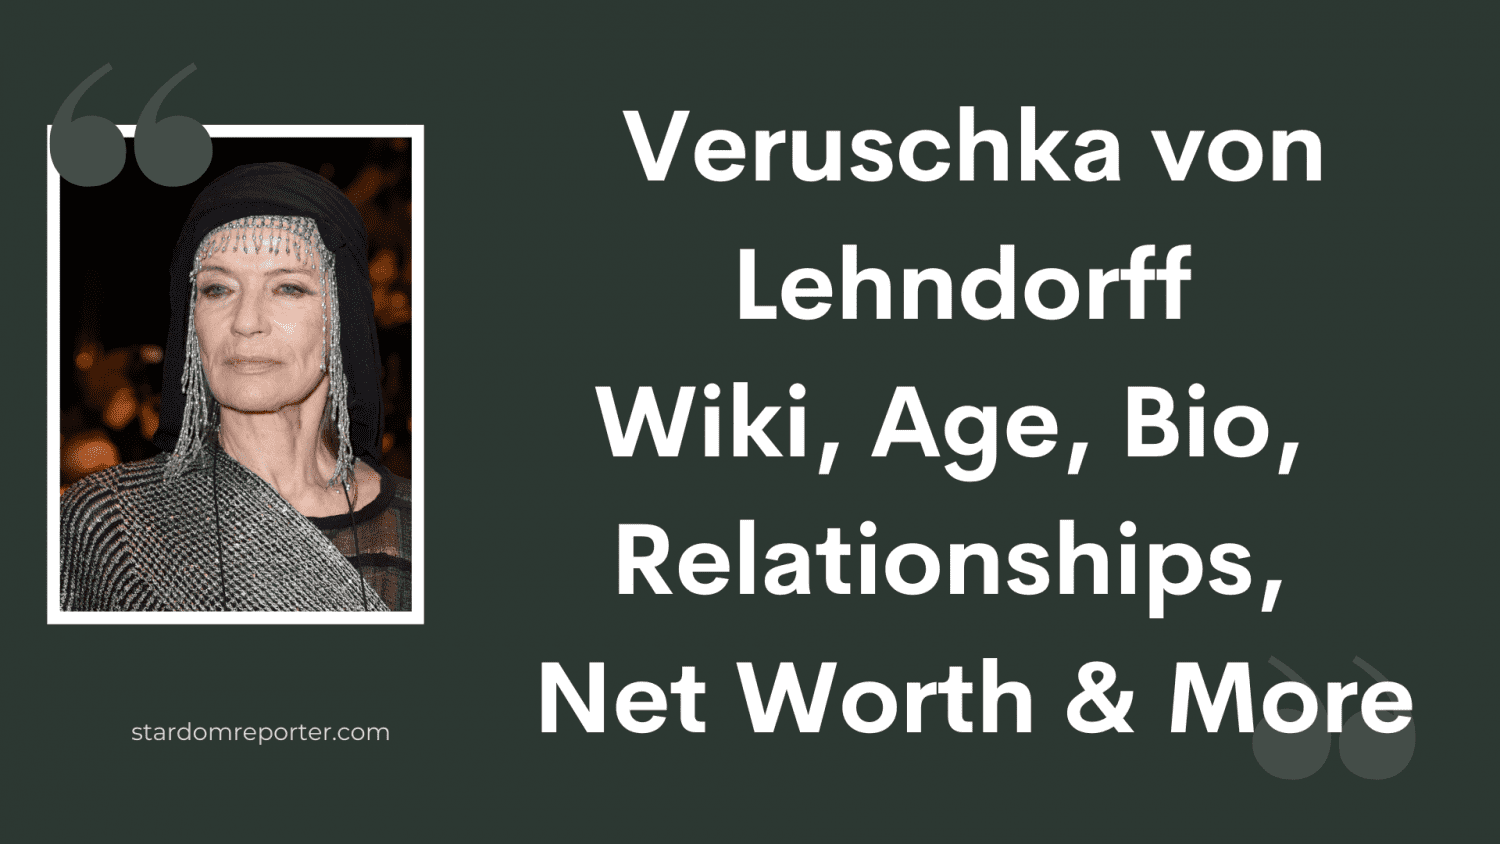 Veruschka von Lehndorff Wiki, Age, Bio, Relationships, Net Worth & More - 1